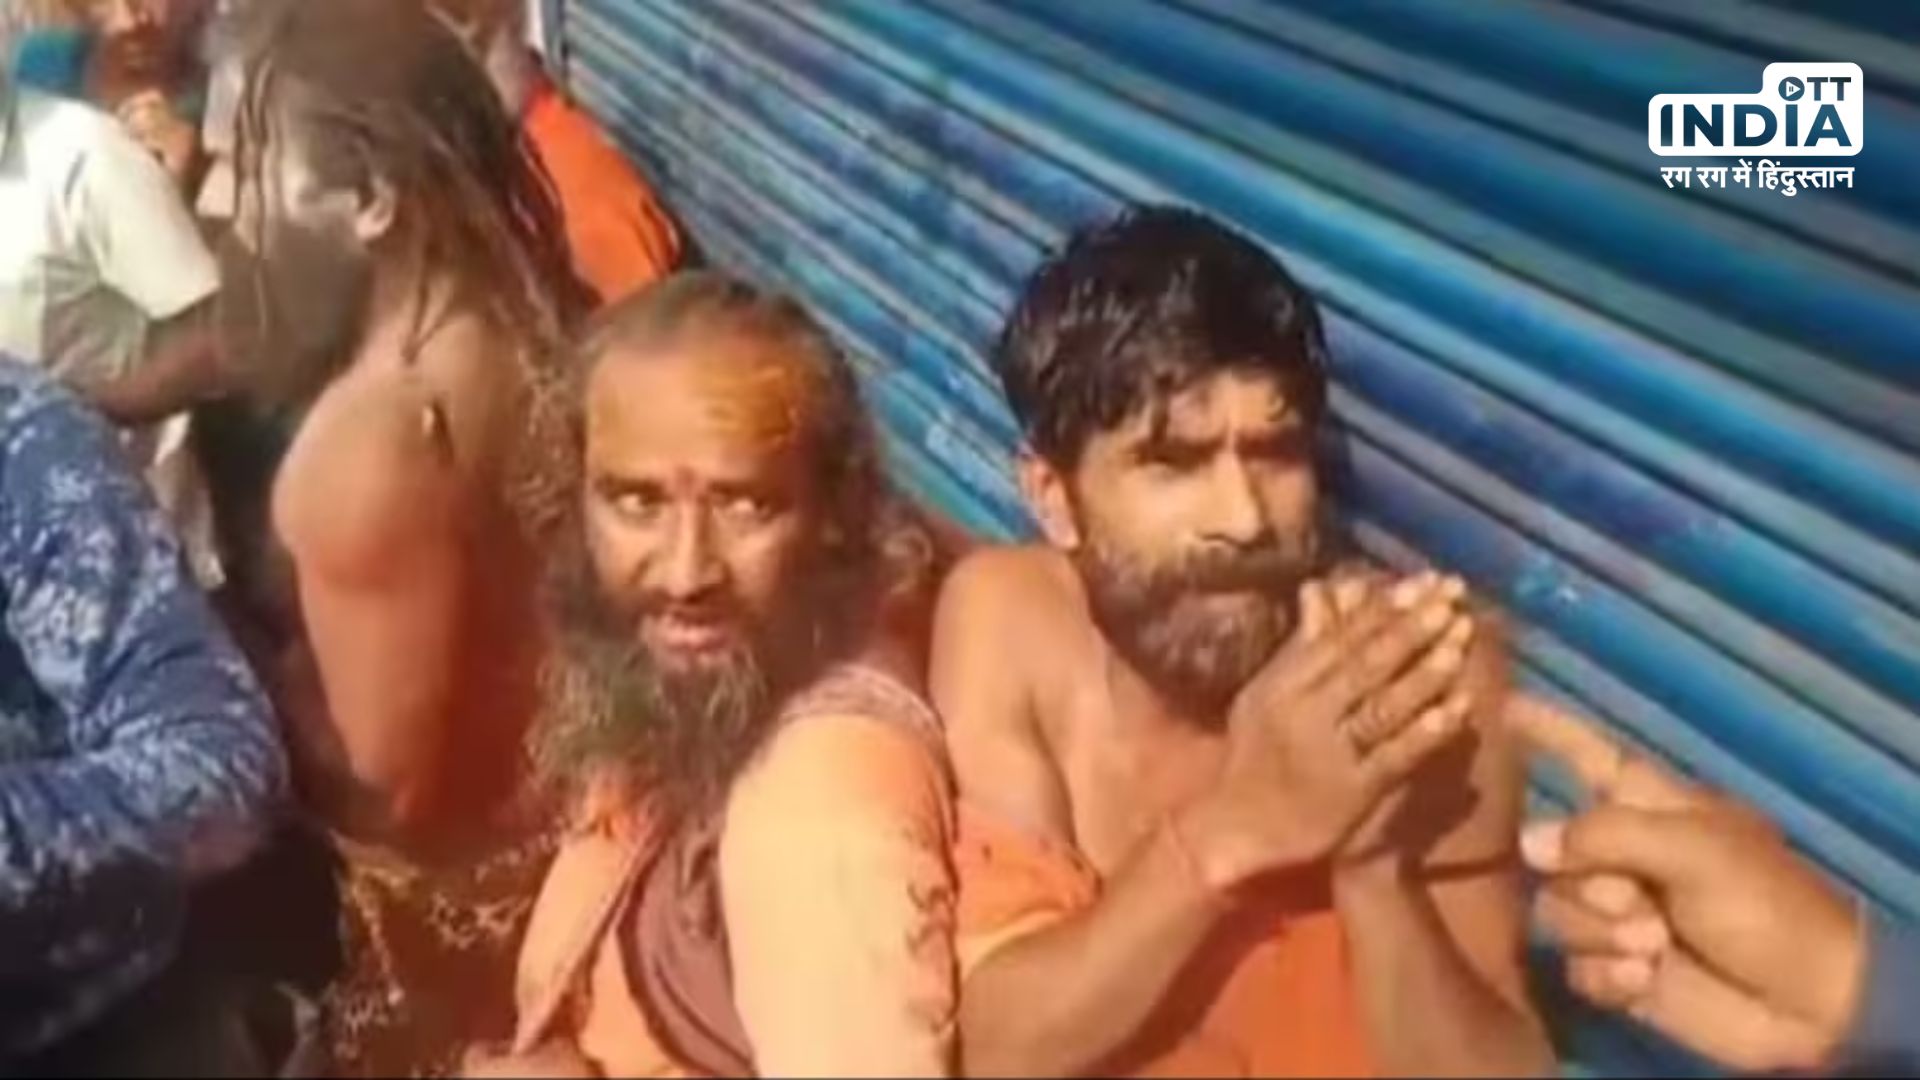 West Bengal Case : गंगासागर जा रहे तीन साधुओं को भीड़ ने पीटा, बीजेपी नेता ने राज्य सरकार पर लगाए आरोप..